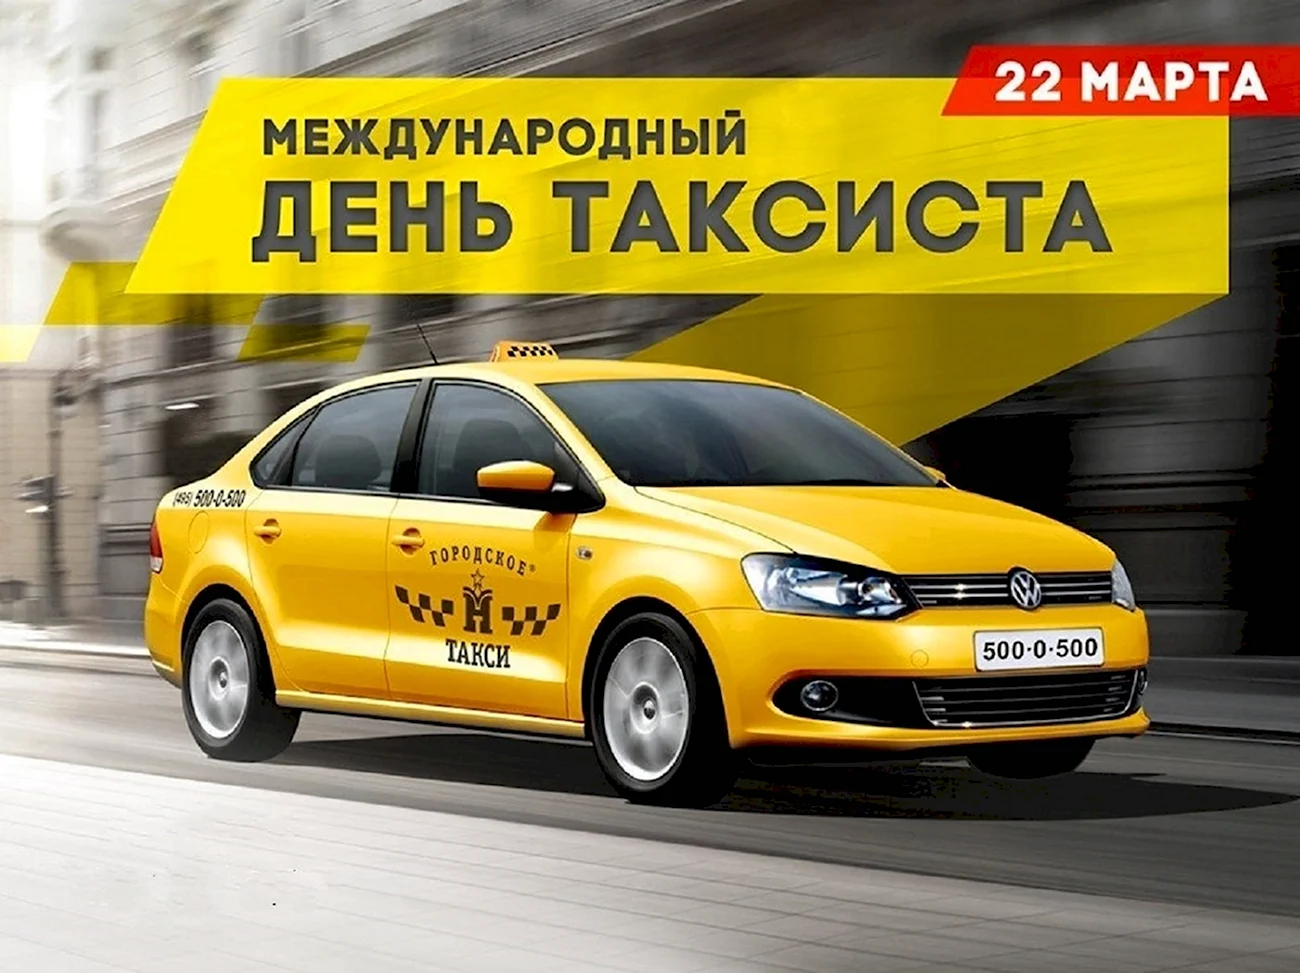 Международный день таксиста. Поздравление